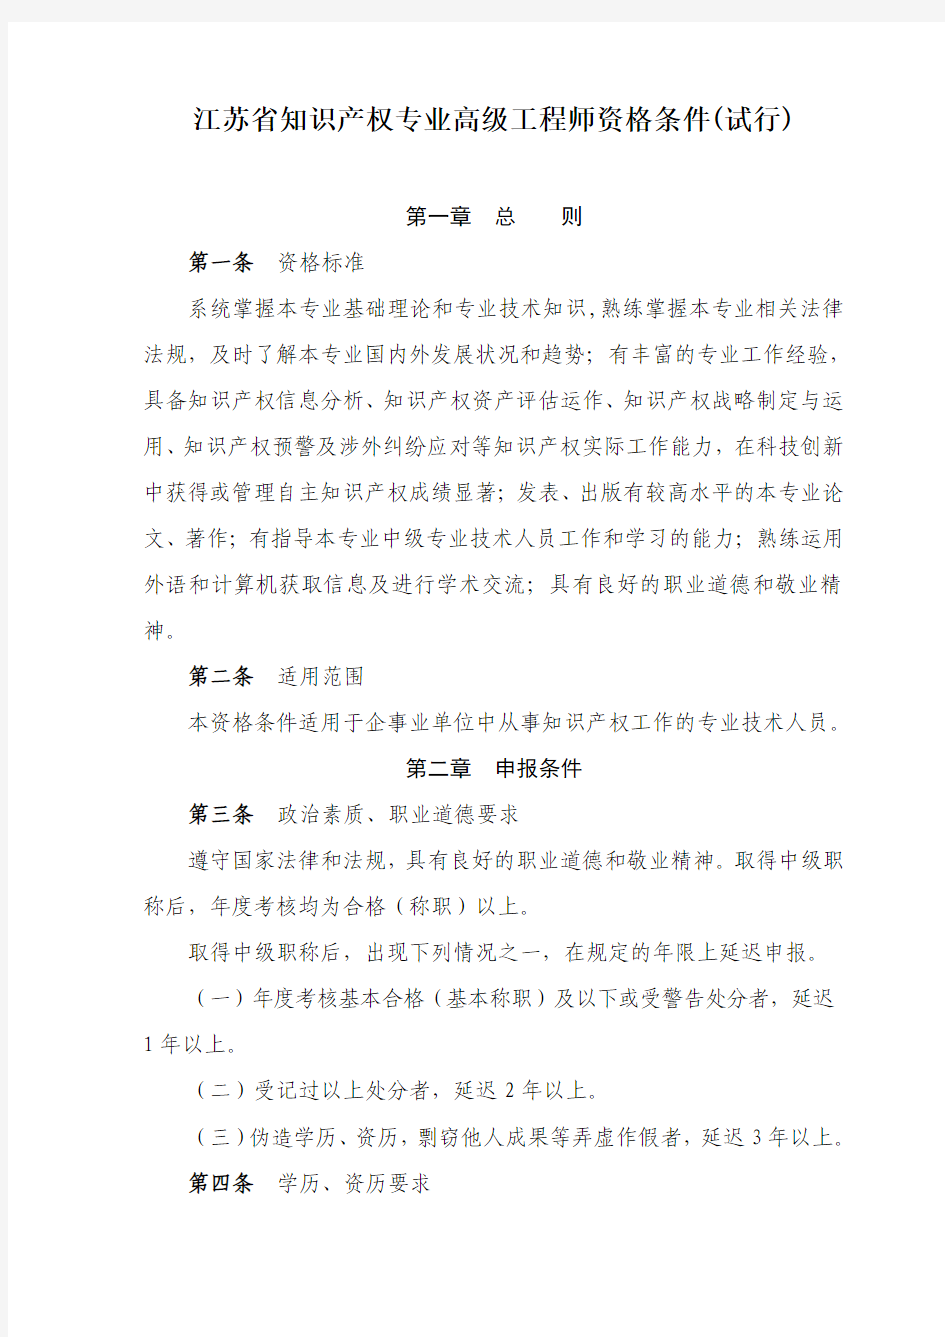 江苏省知识产权专业高级工程师资格条件(试行)